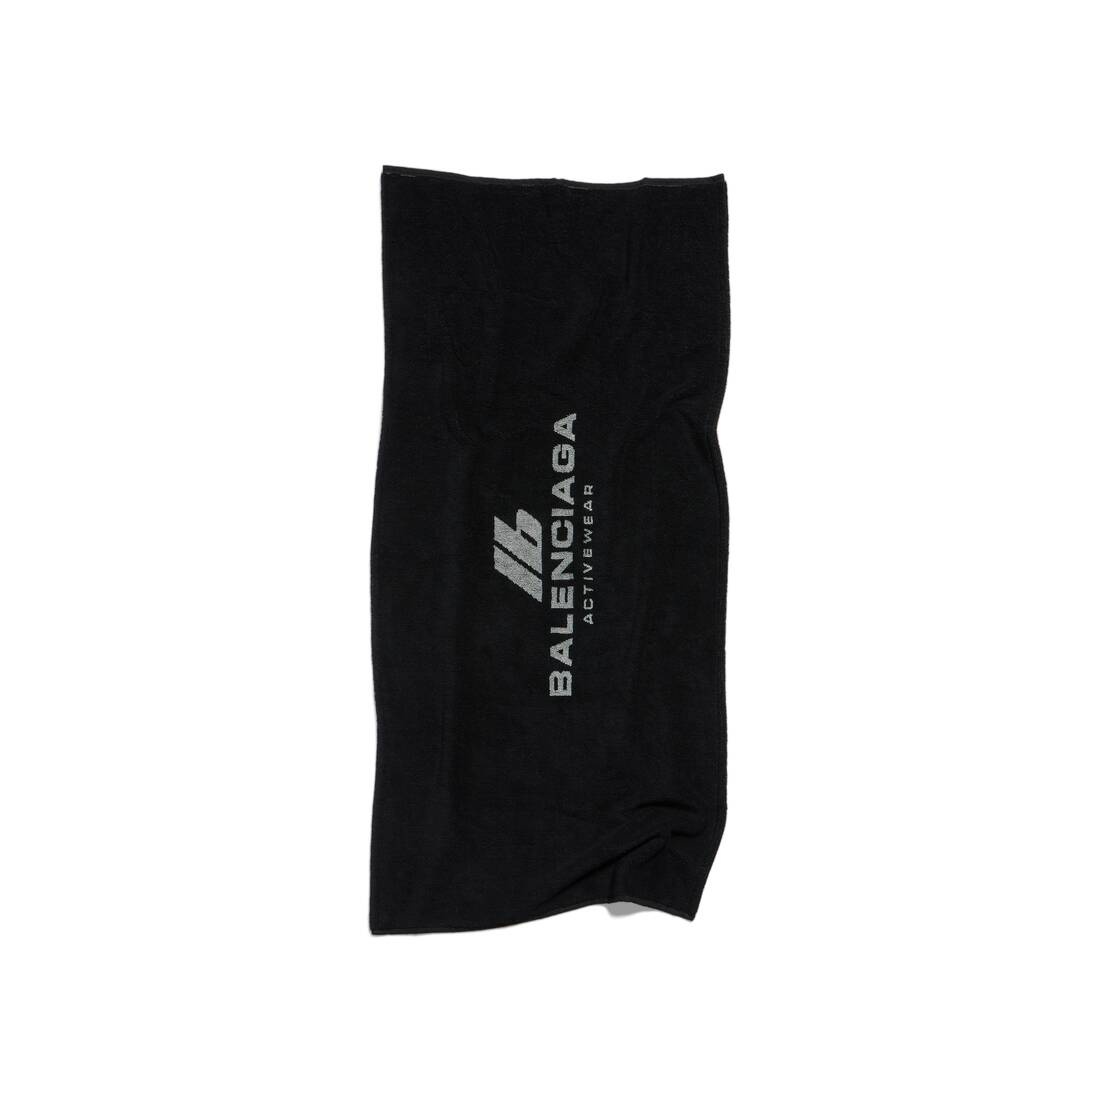 Activewear Gym Towel in Black/grey - 2